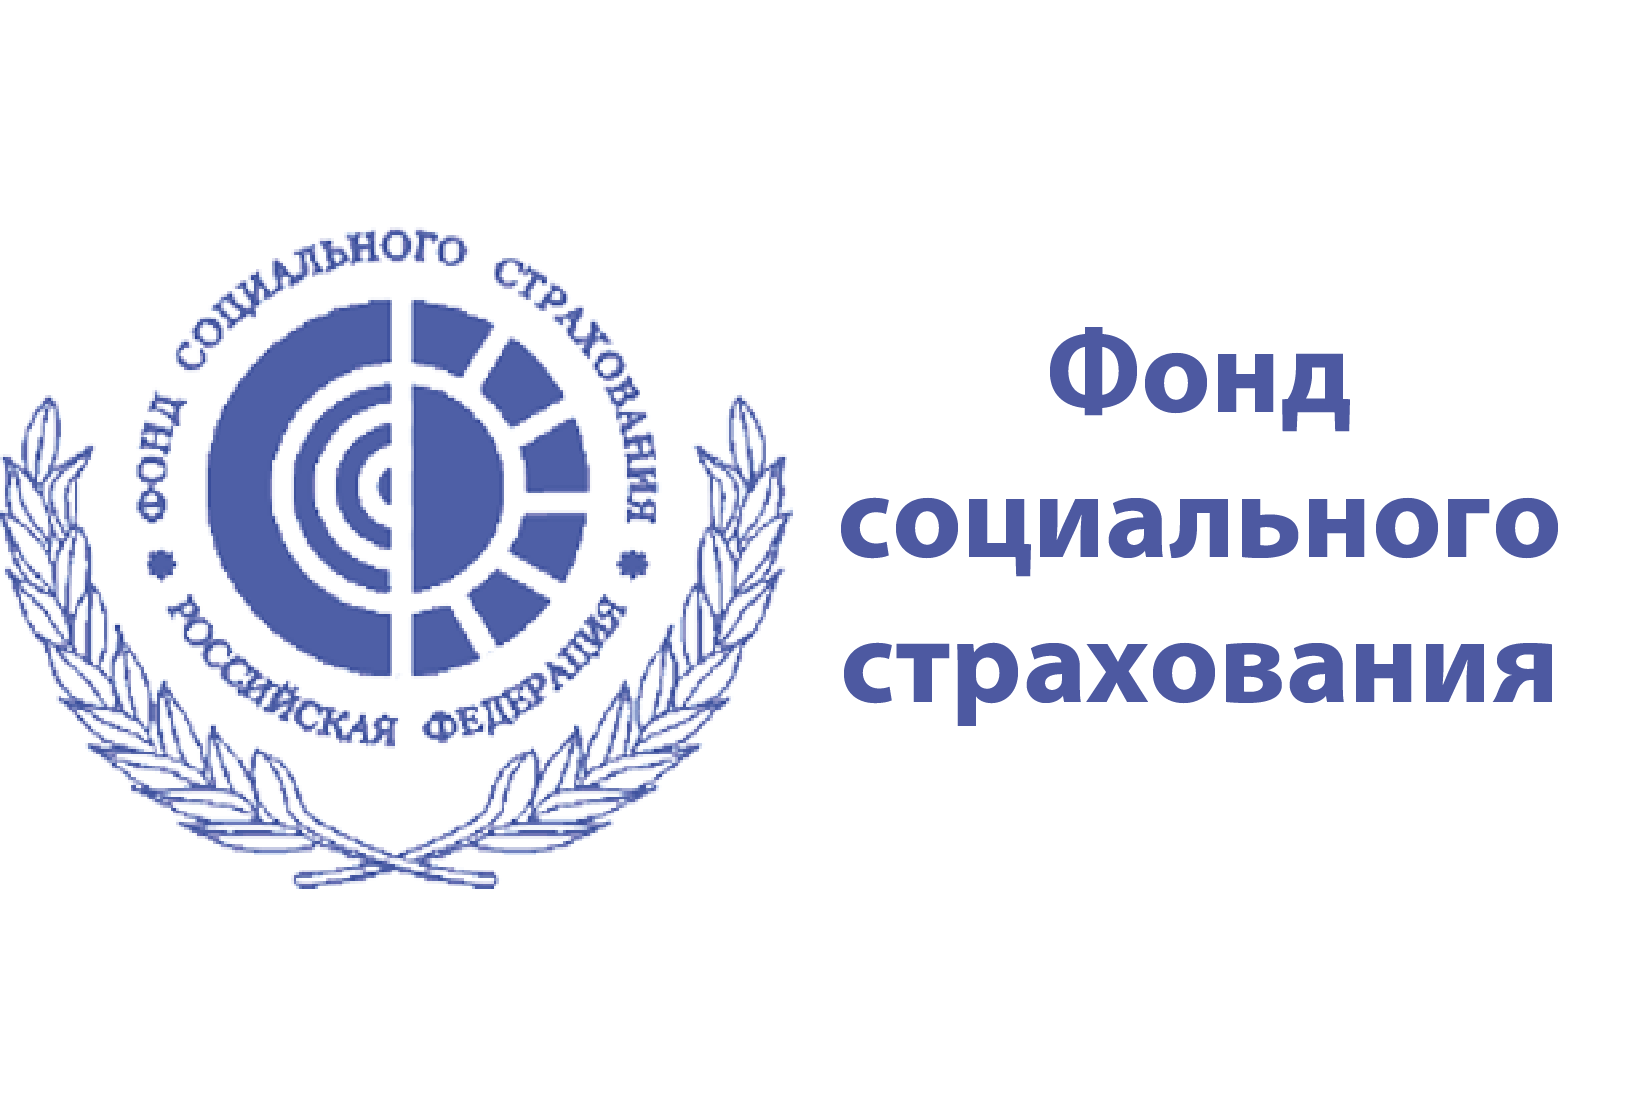 Координационный совет в Кузбасском региональном отделении Фонда